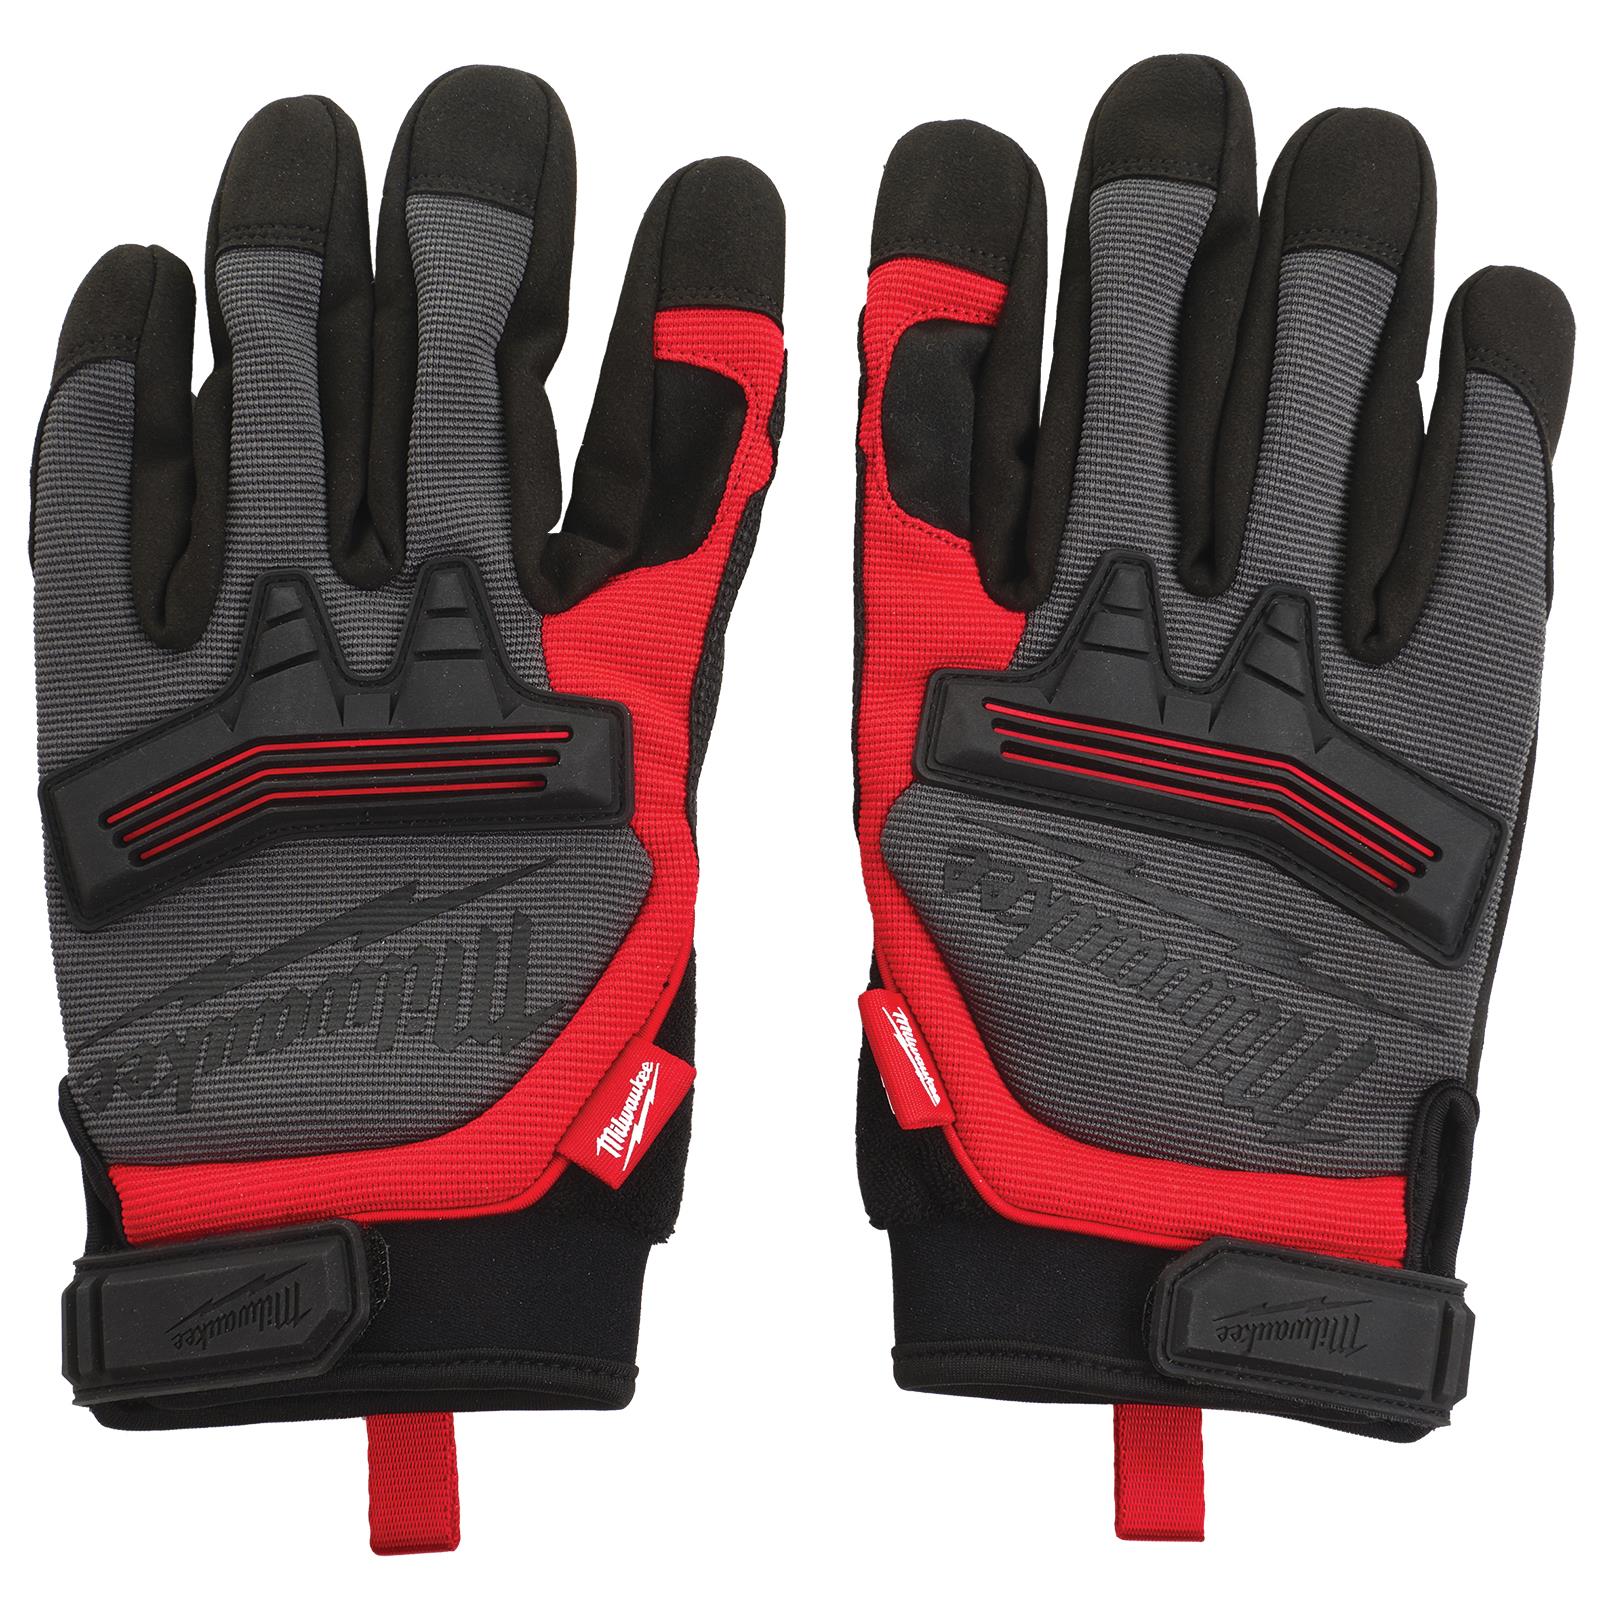 Milwaukee Safety Gloves Demolition Glove Size 9 / L Large